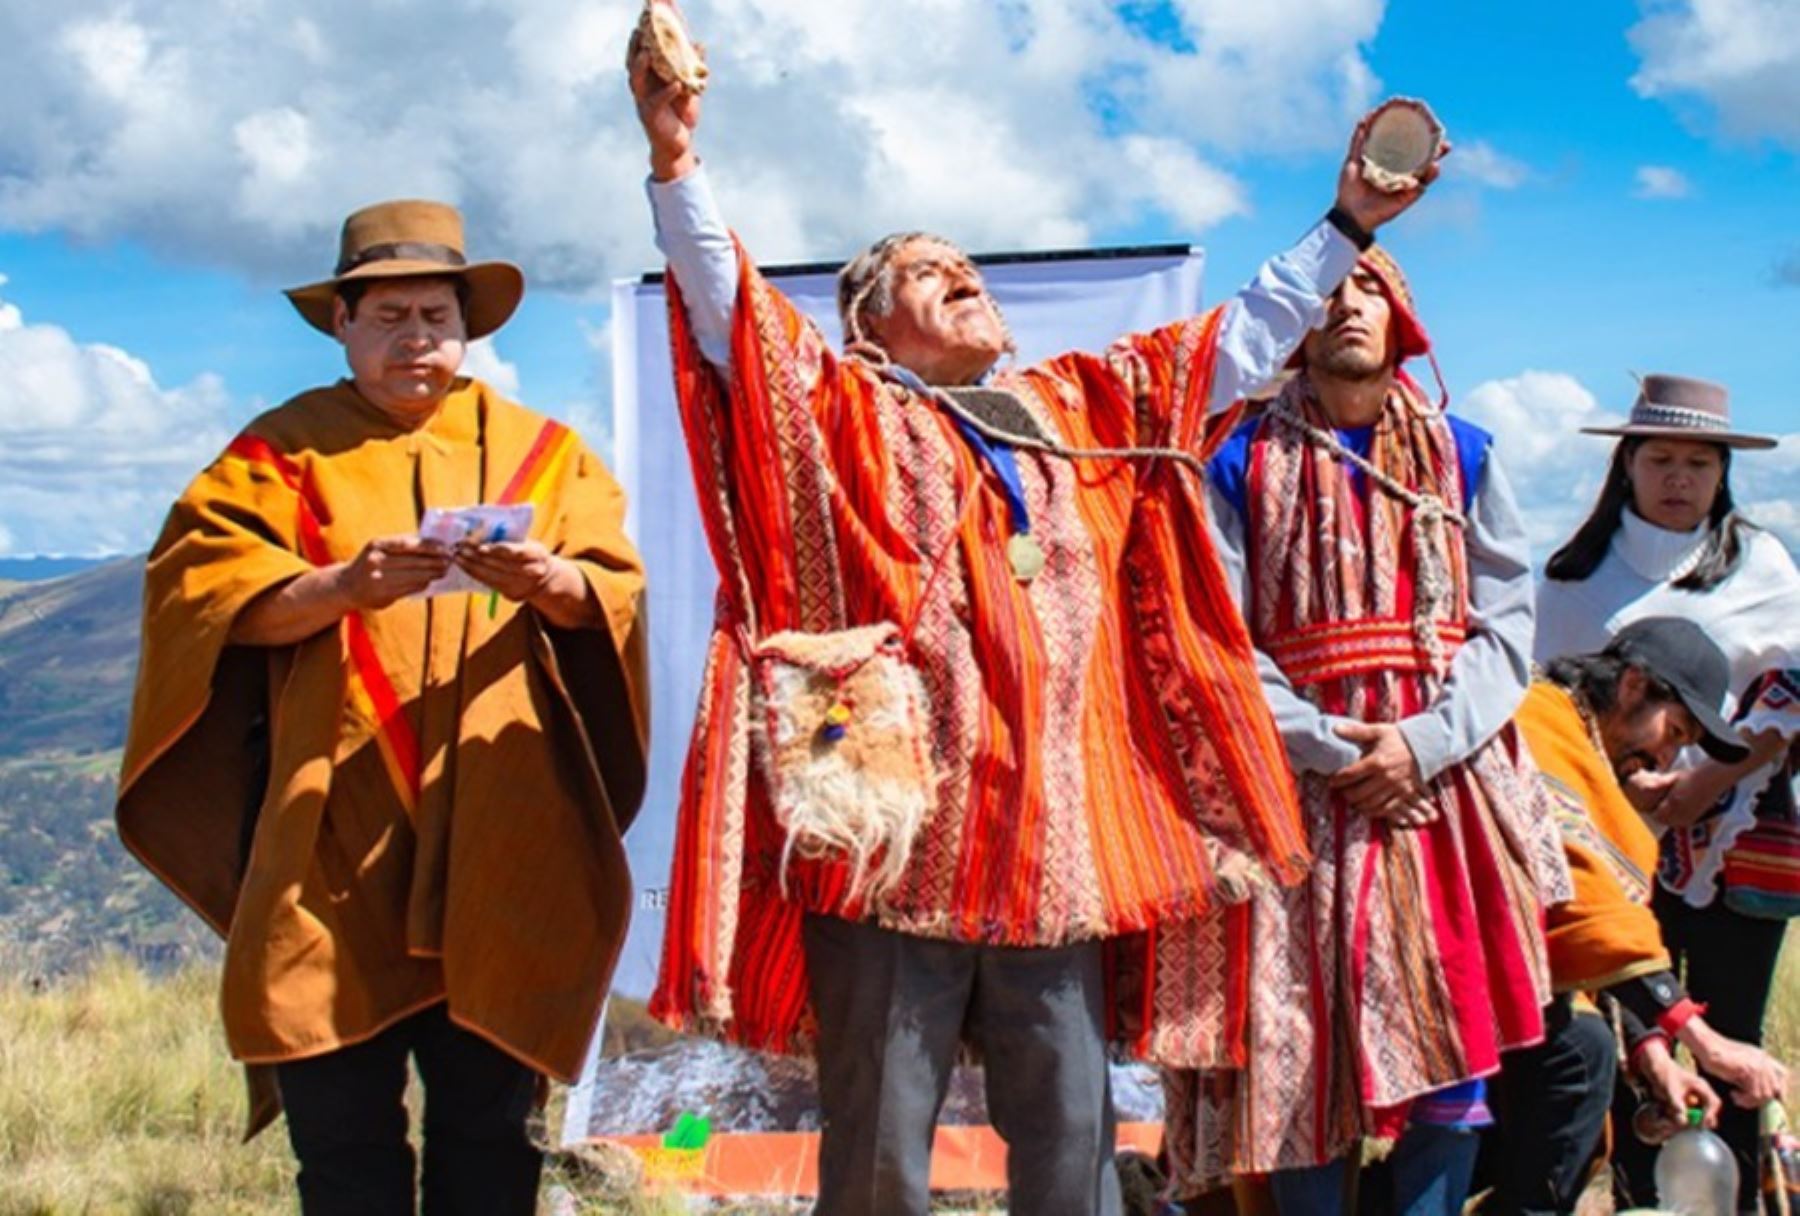 El Año Nuevo Andino es una celebración cultural de origen ancestral en los Andes, sobre todo en el altiplano y en la sierra sur peruana.